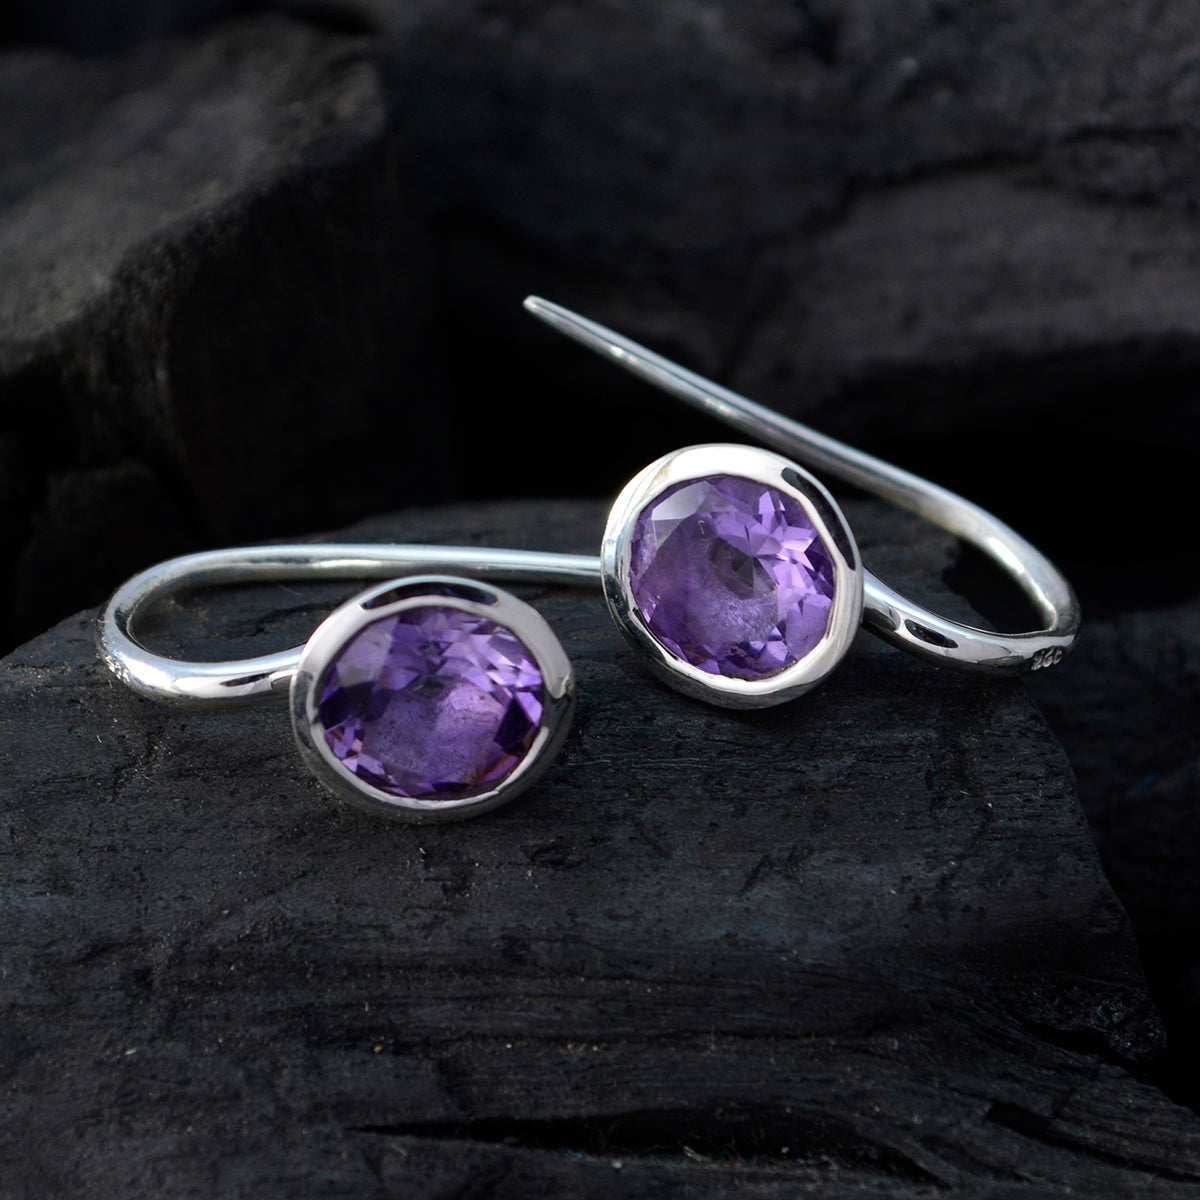 Riyo Real Gemstones round Faceted Purple Amethyst Silver Earrings gift for halloween